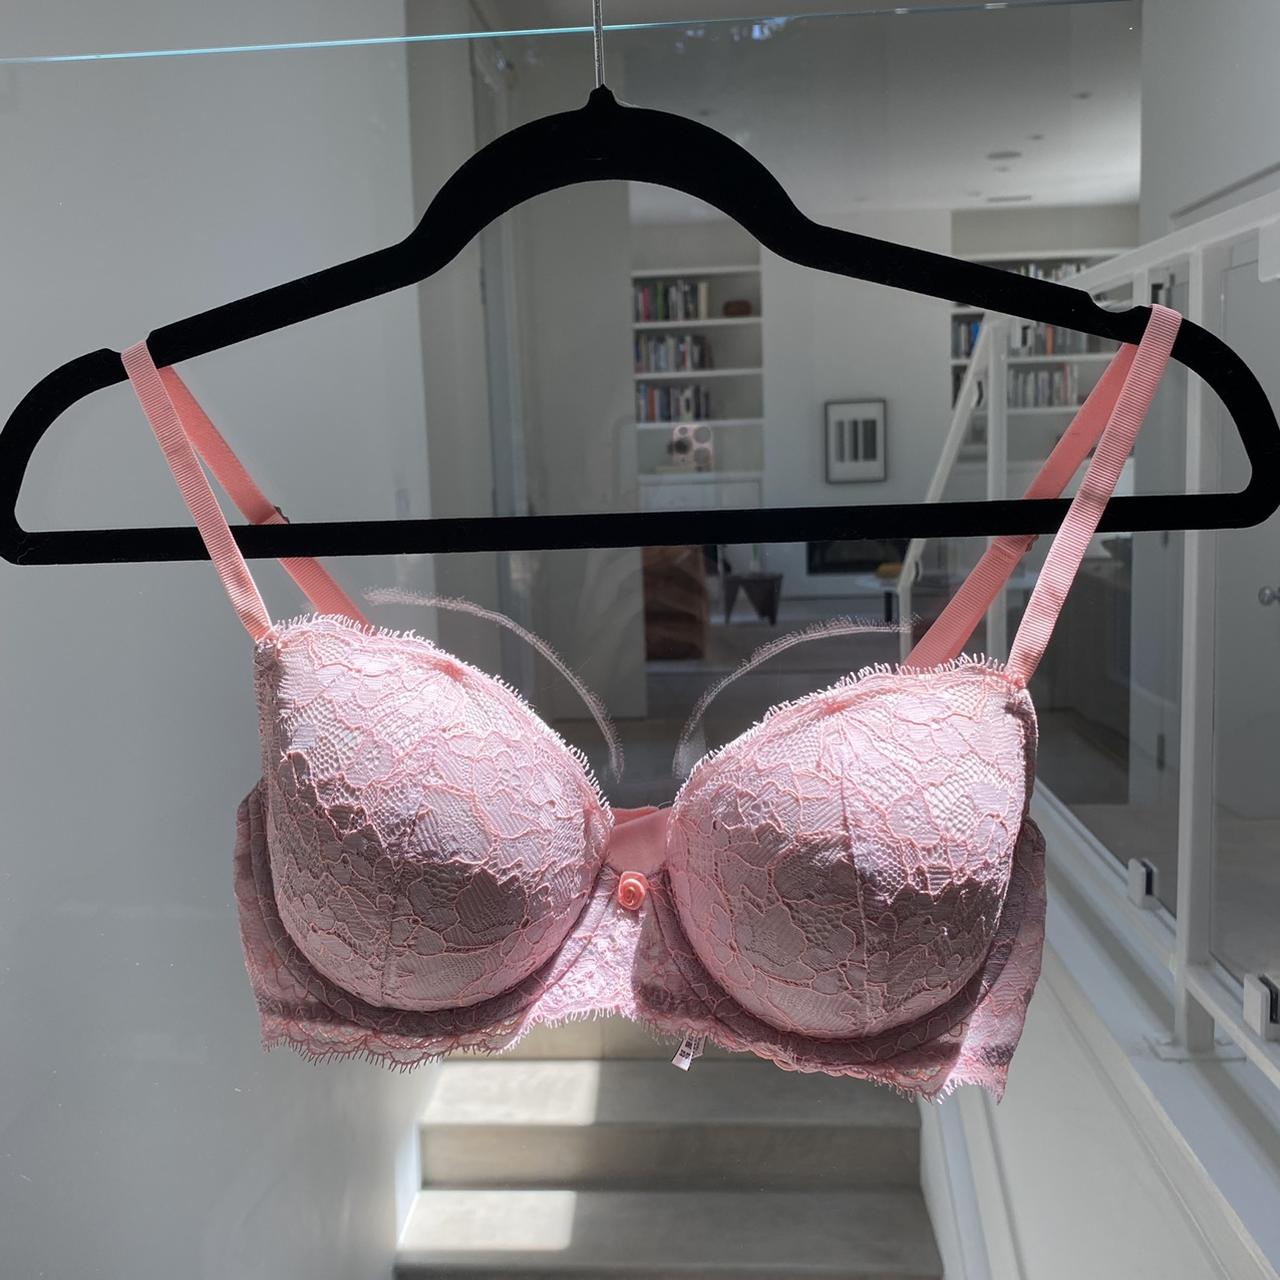 Victoria's Secret pink lace bralette size medium - - Depop